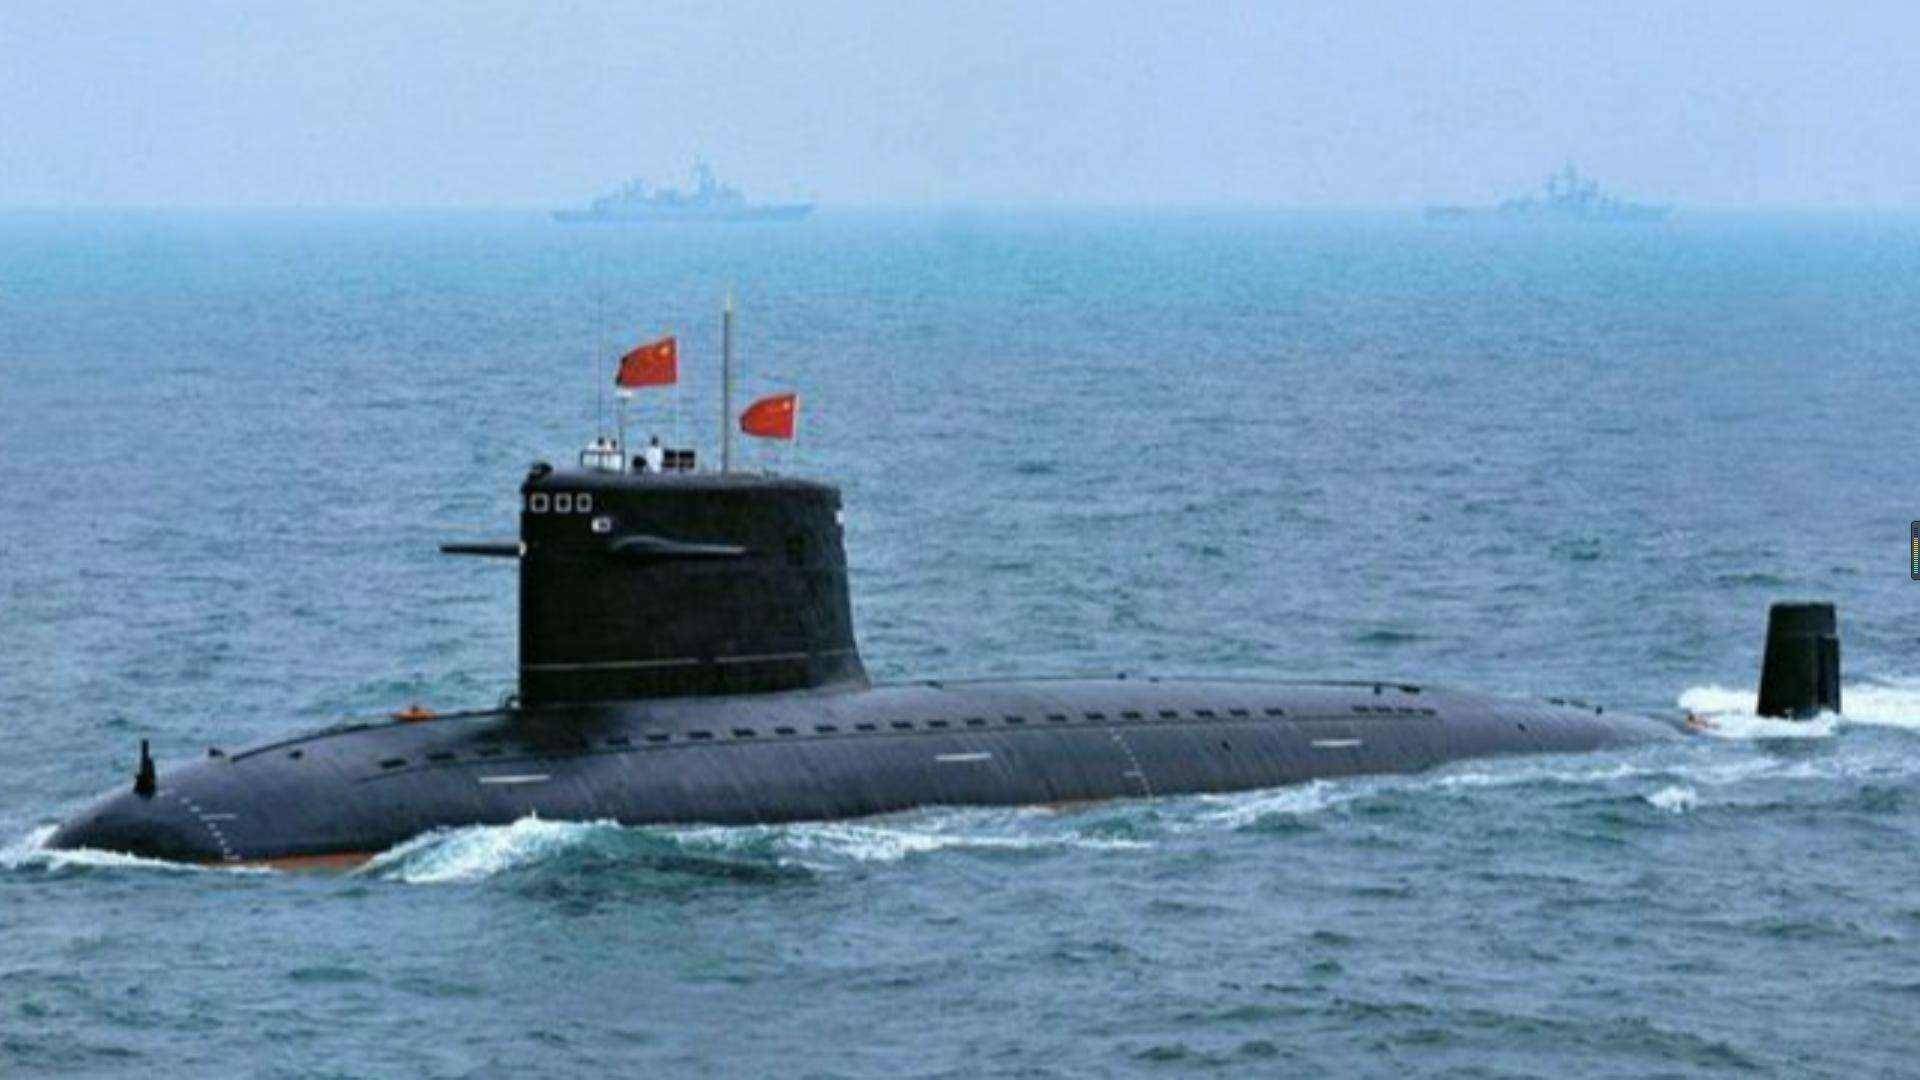 中国潜艇名称大全图片